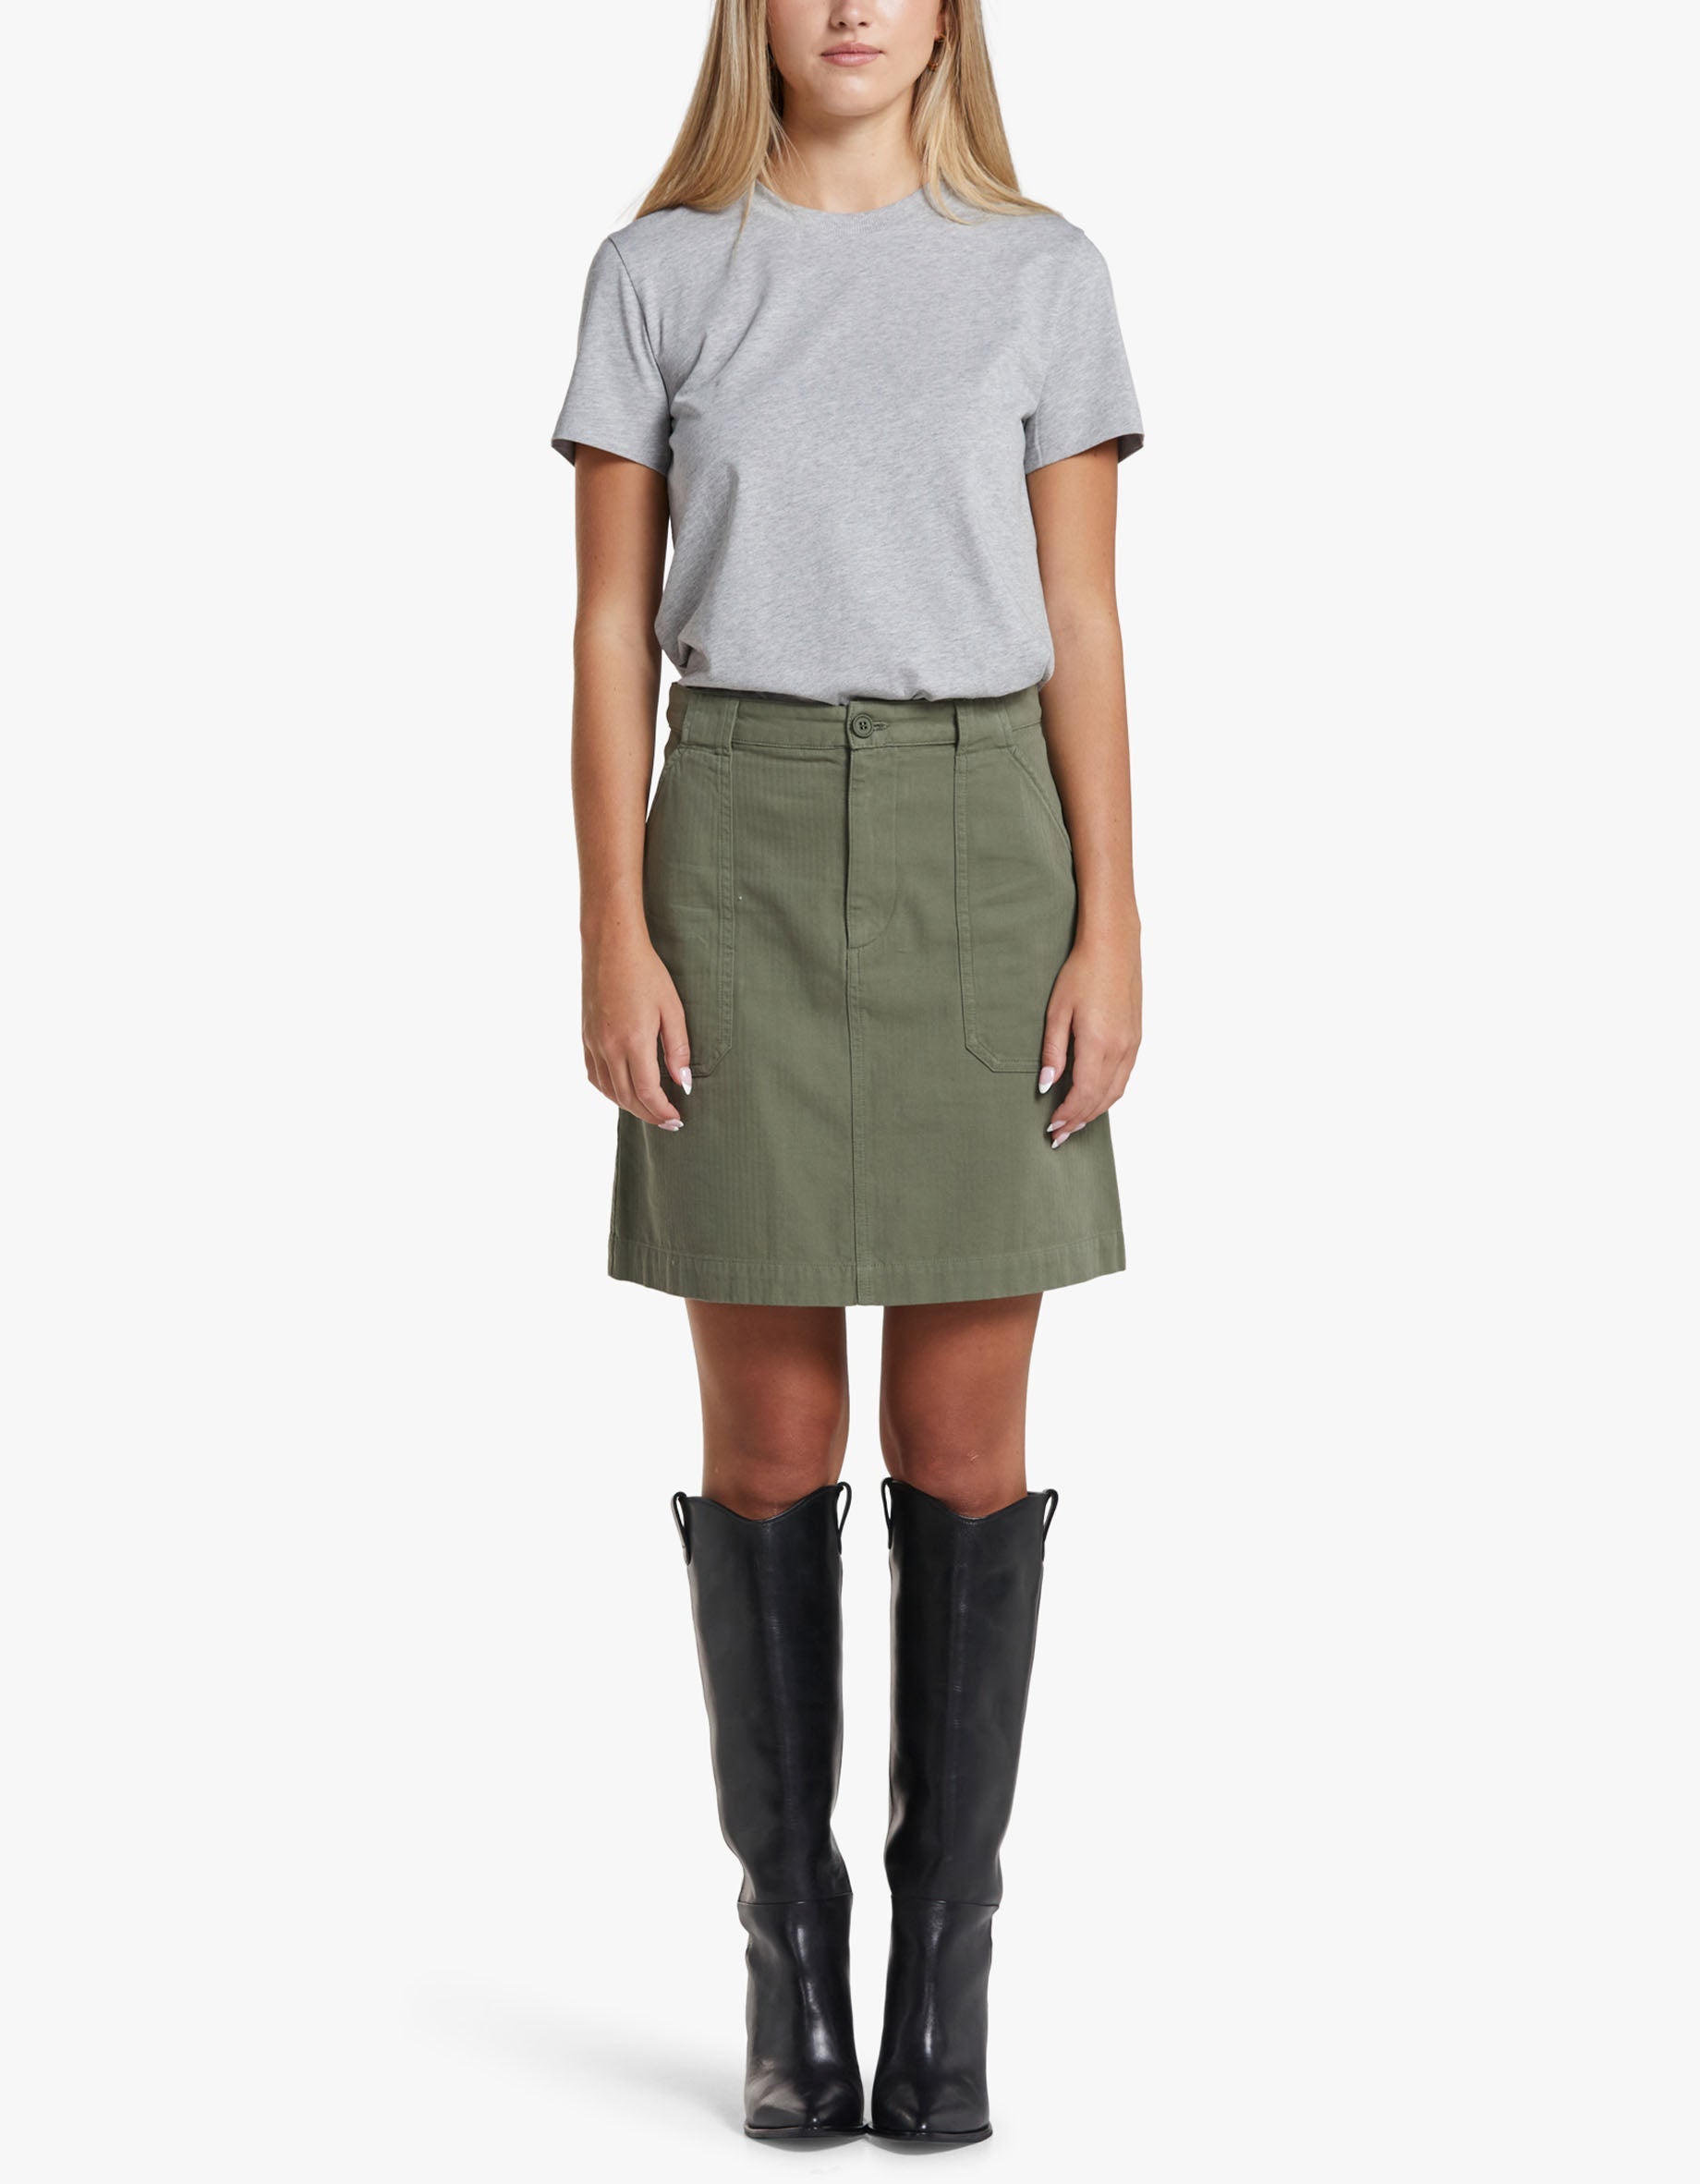 Superette | New Lea Skirt - Khaki